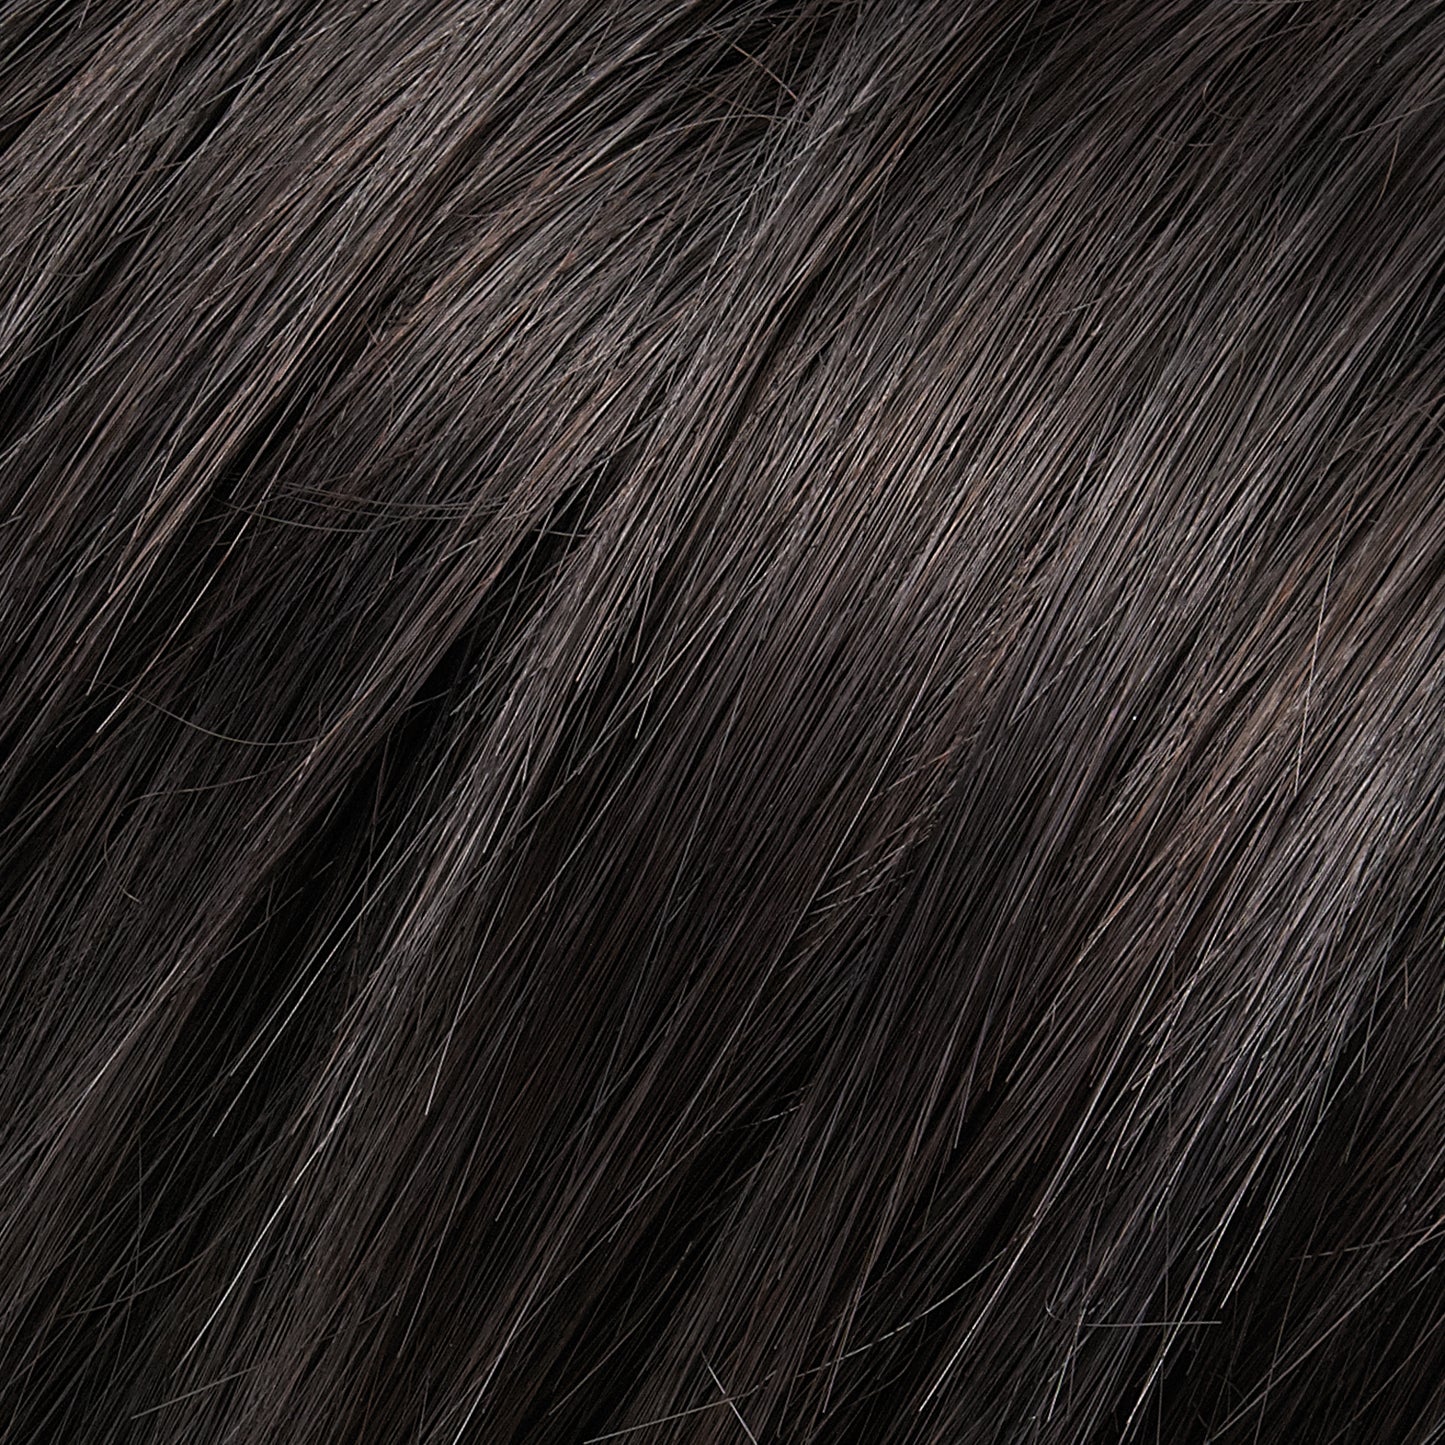 Mimic Synthetic Hair Wrap - Jon Renau